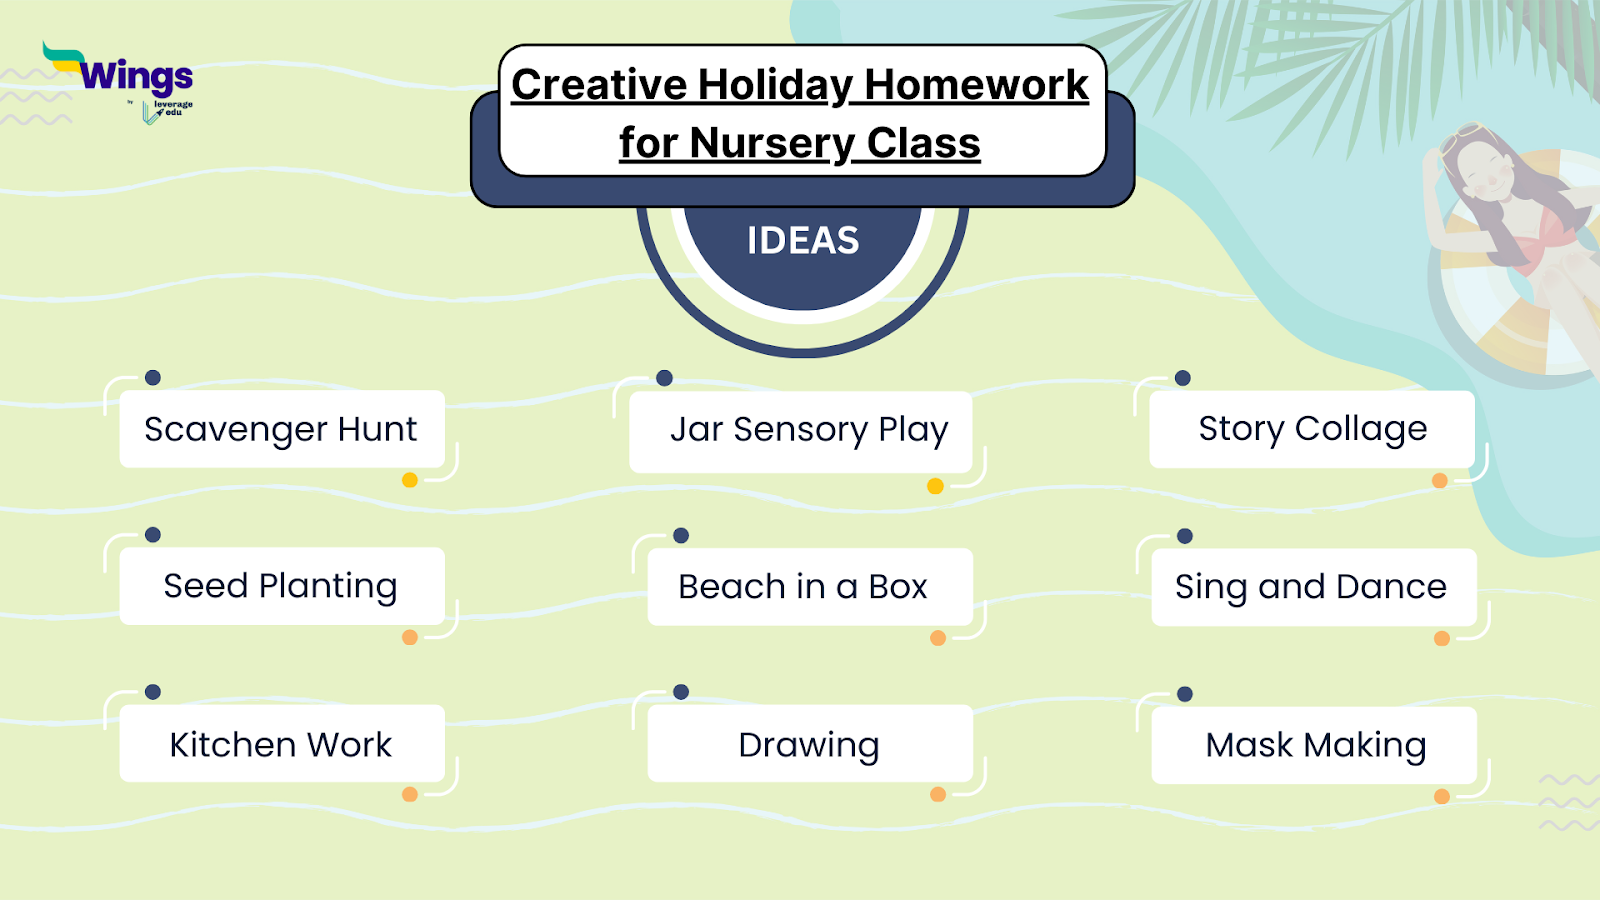 Creative Holiday Homework for Nursery Class: Top ideas